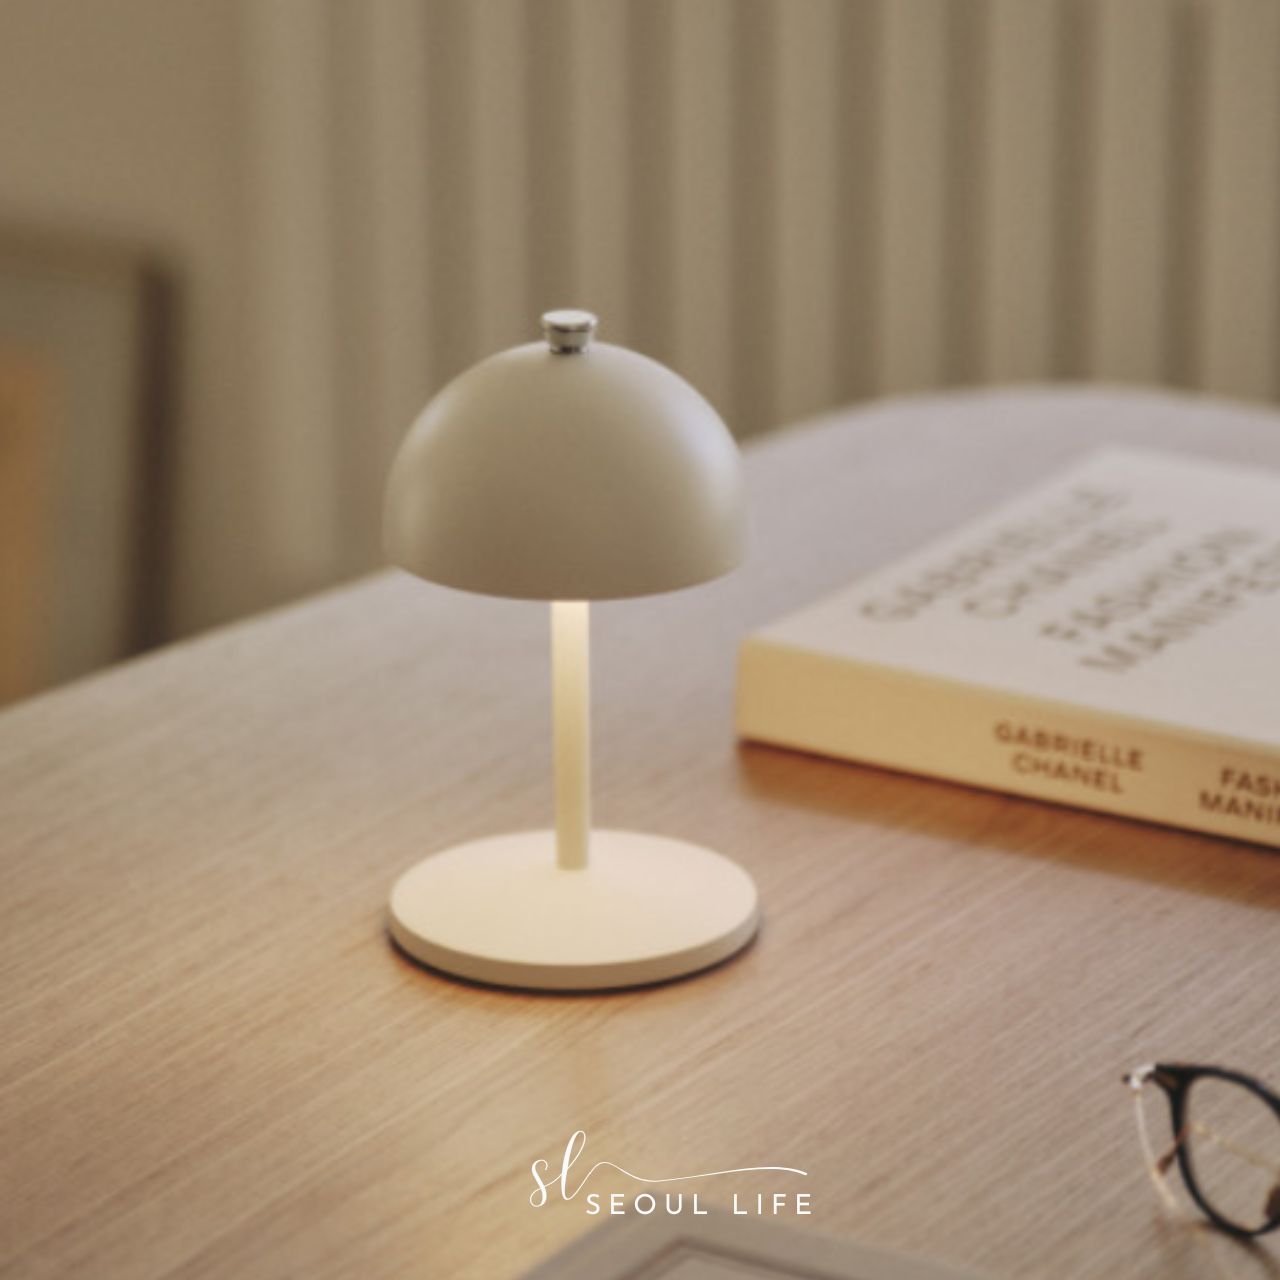 [SeoulLife]*Lumir R* Portable Camping Lamp, table lamp, IP65 Waterproof